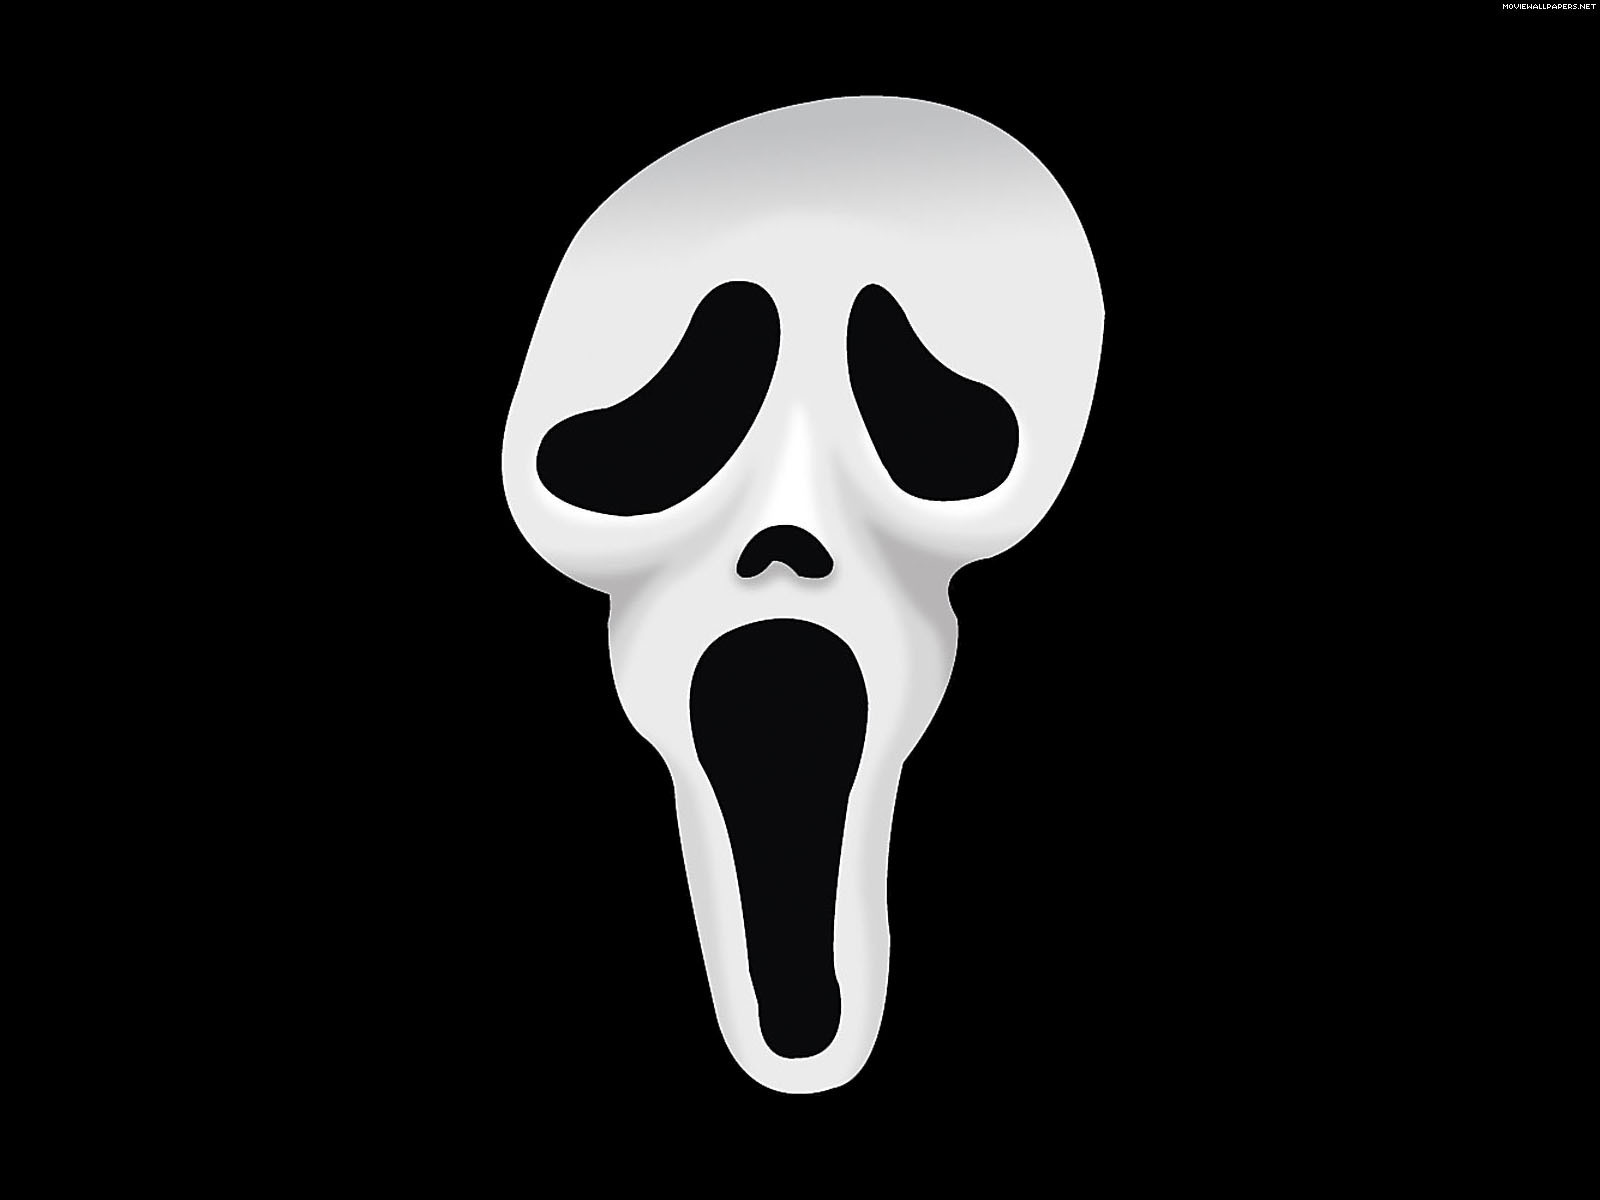 Free Download Wonderful Scream - Scream In Scream 4 - HD Wallpaper 